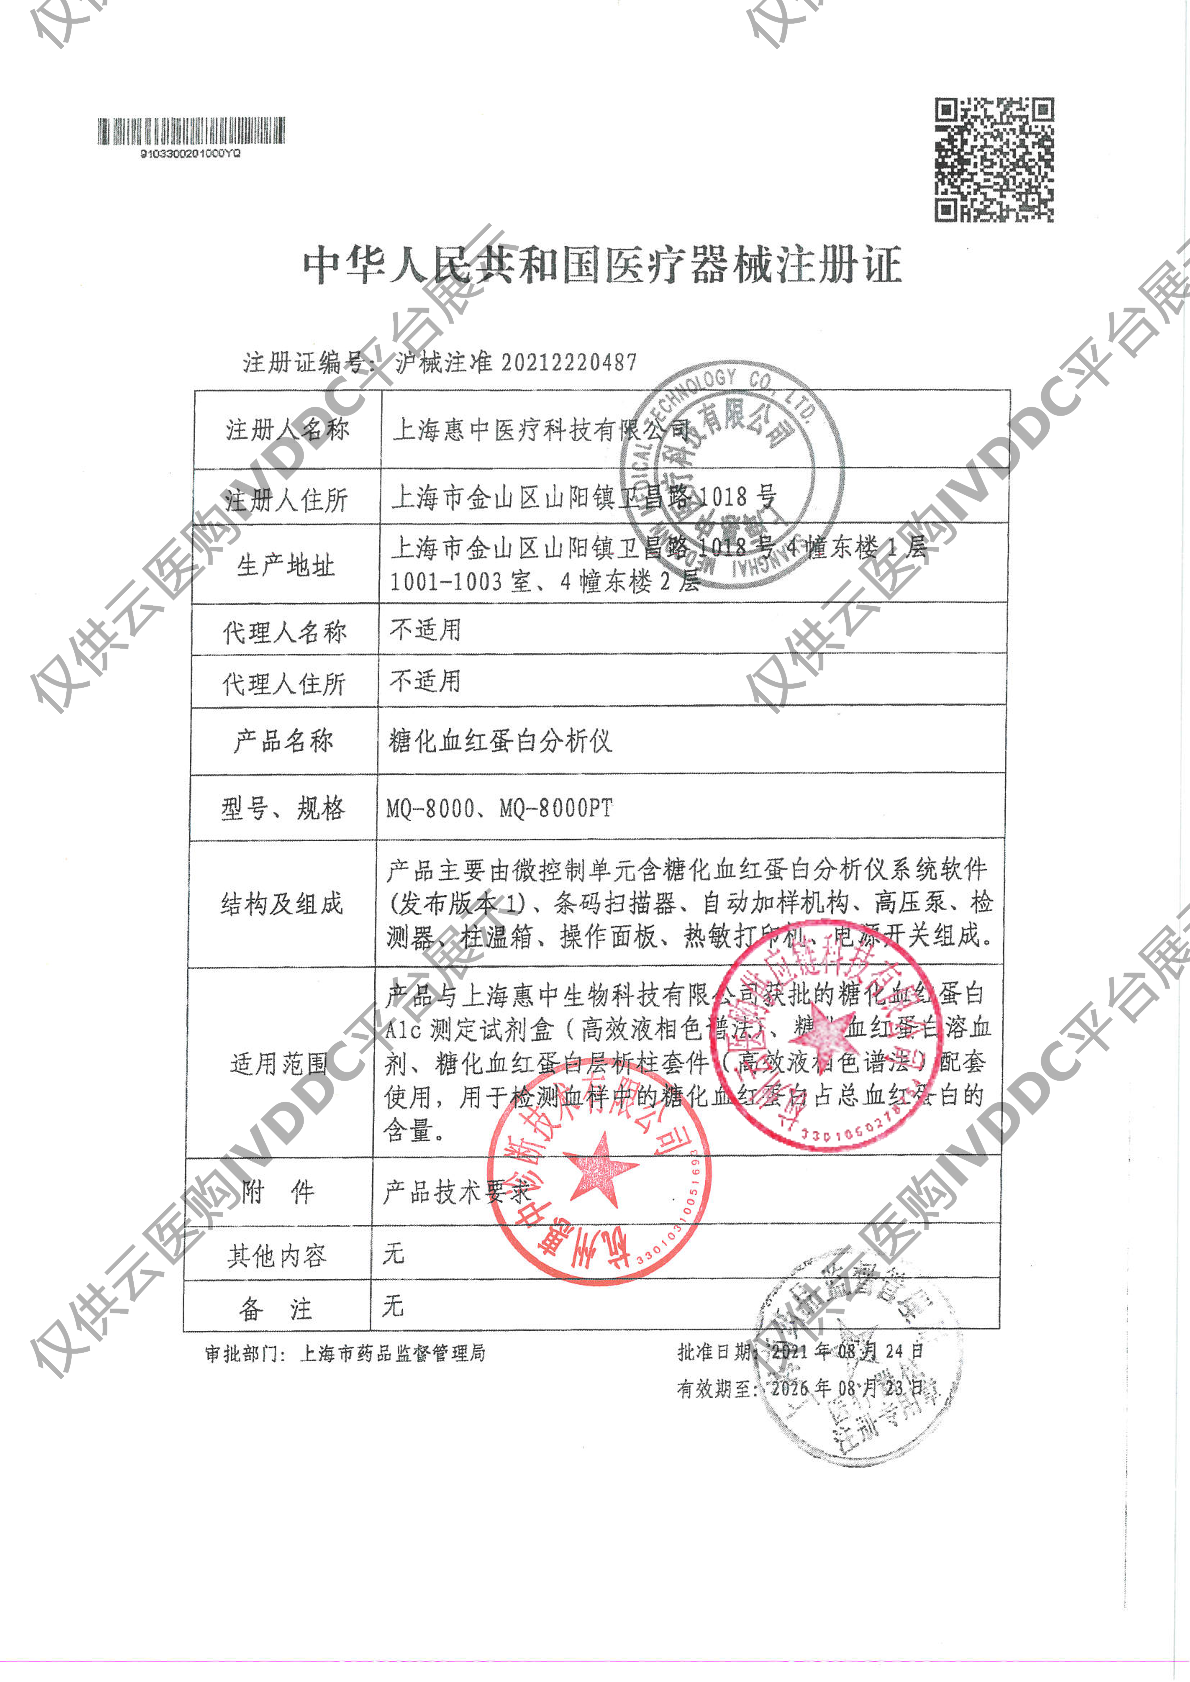 【惠中】糖化血红蛋白分析仪MQ-8000注册证